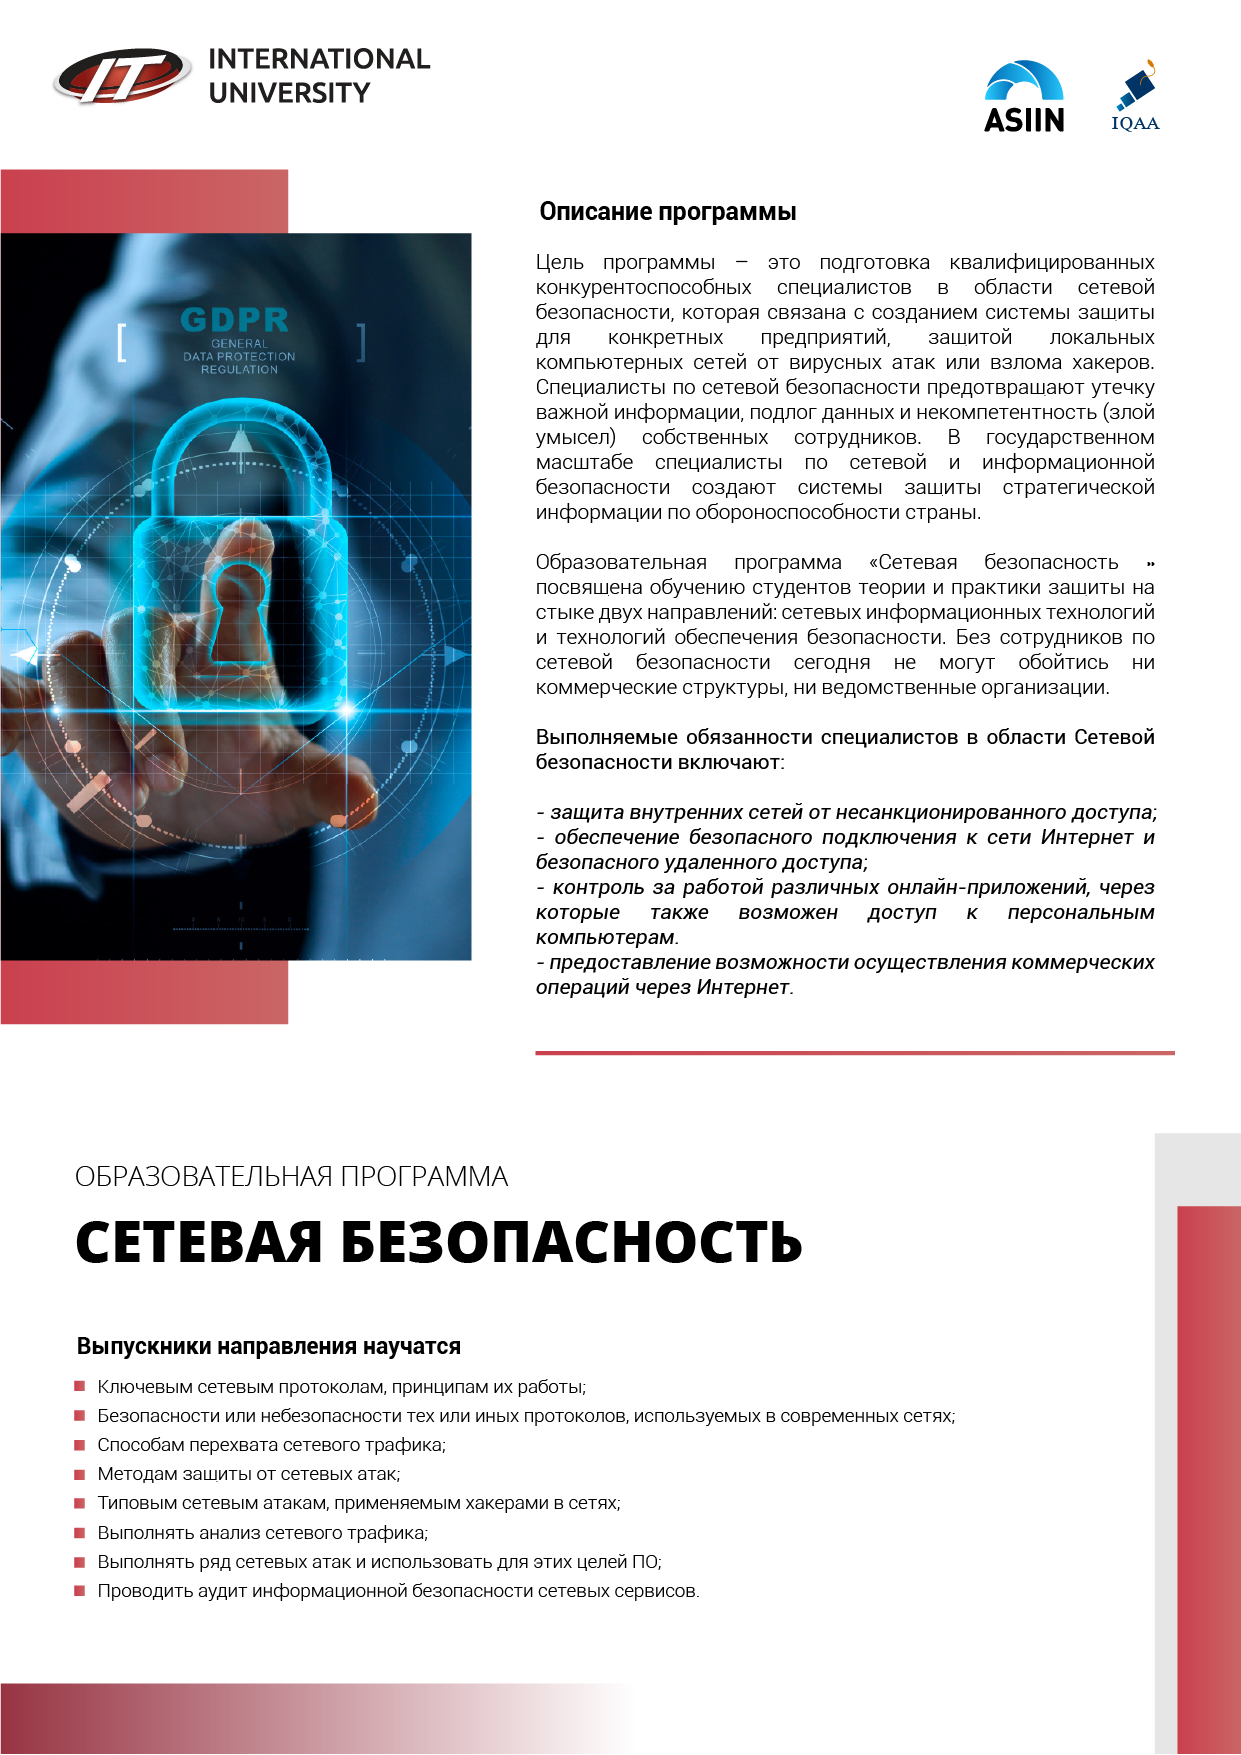 6B06303 Network security (ru).png